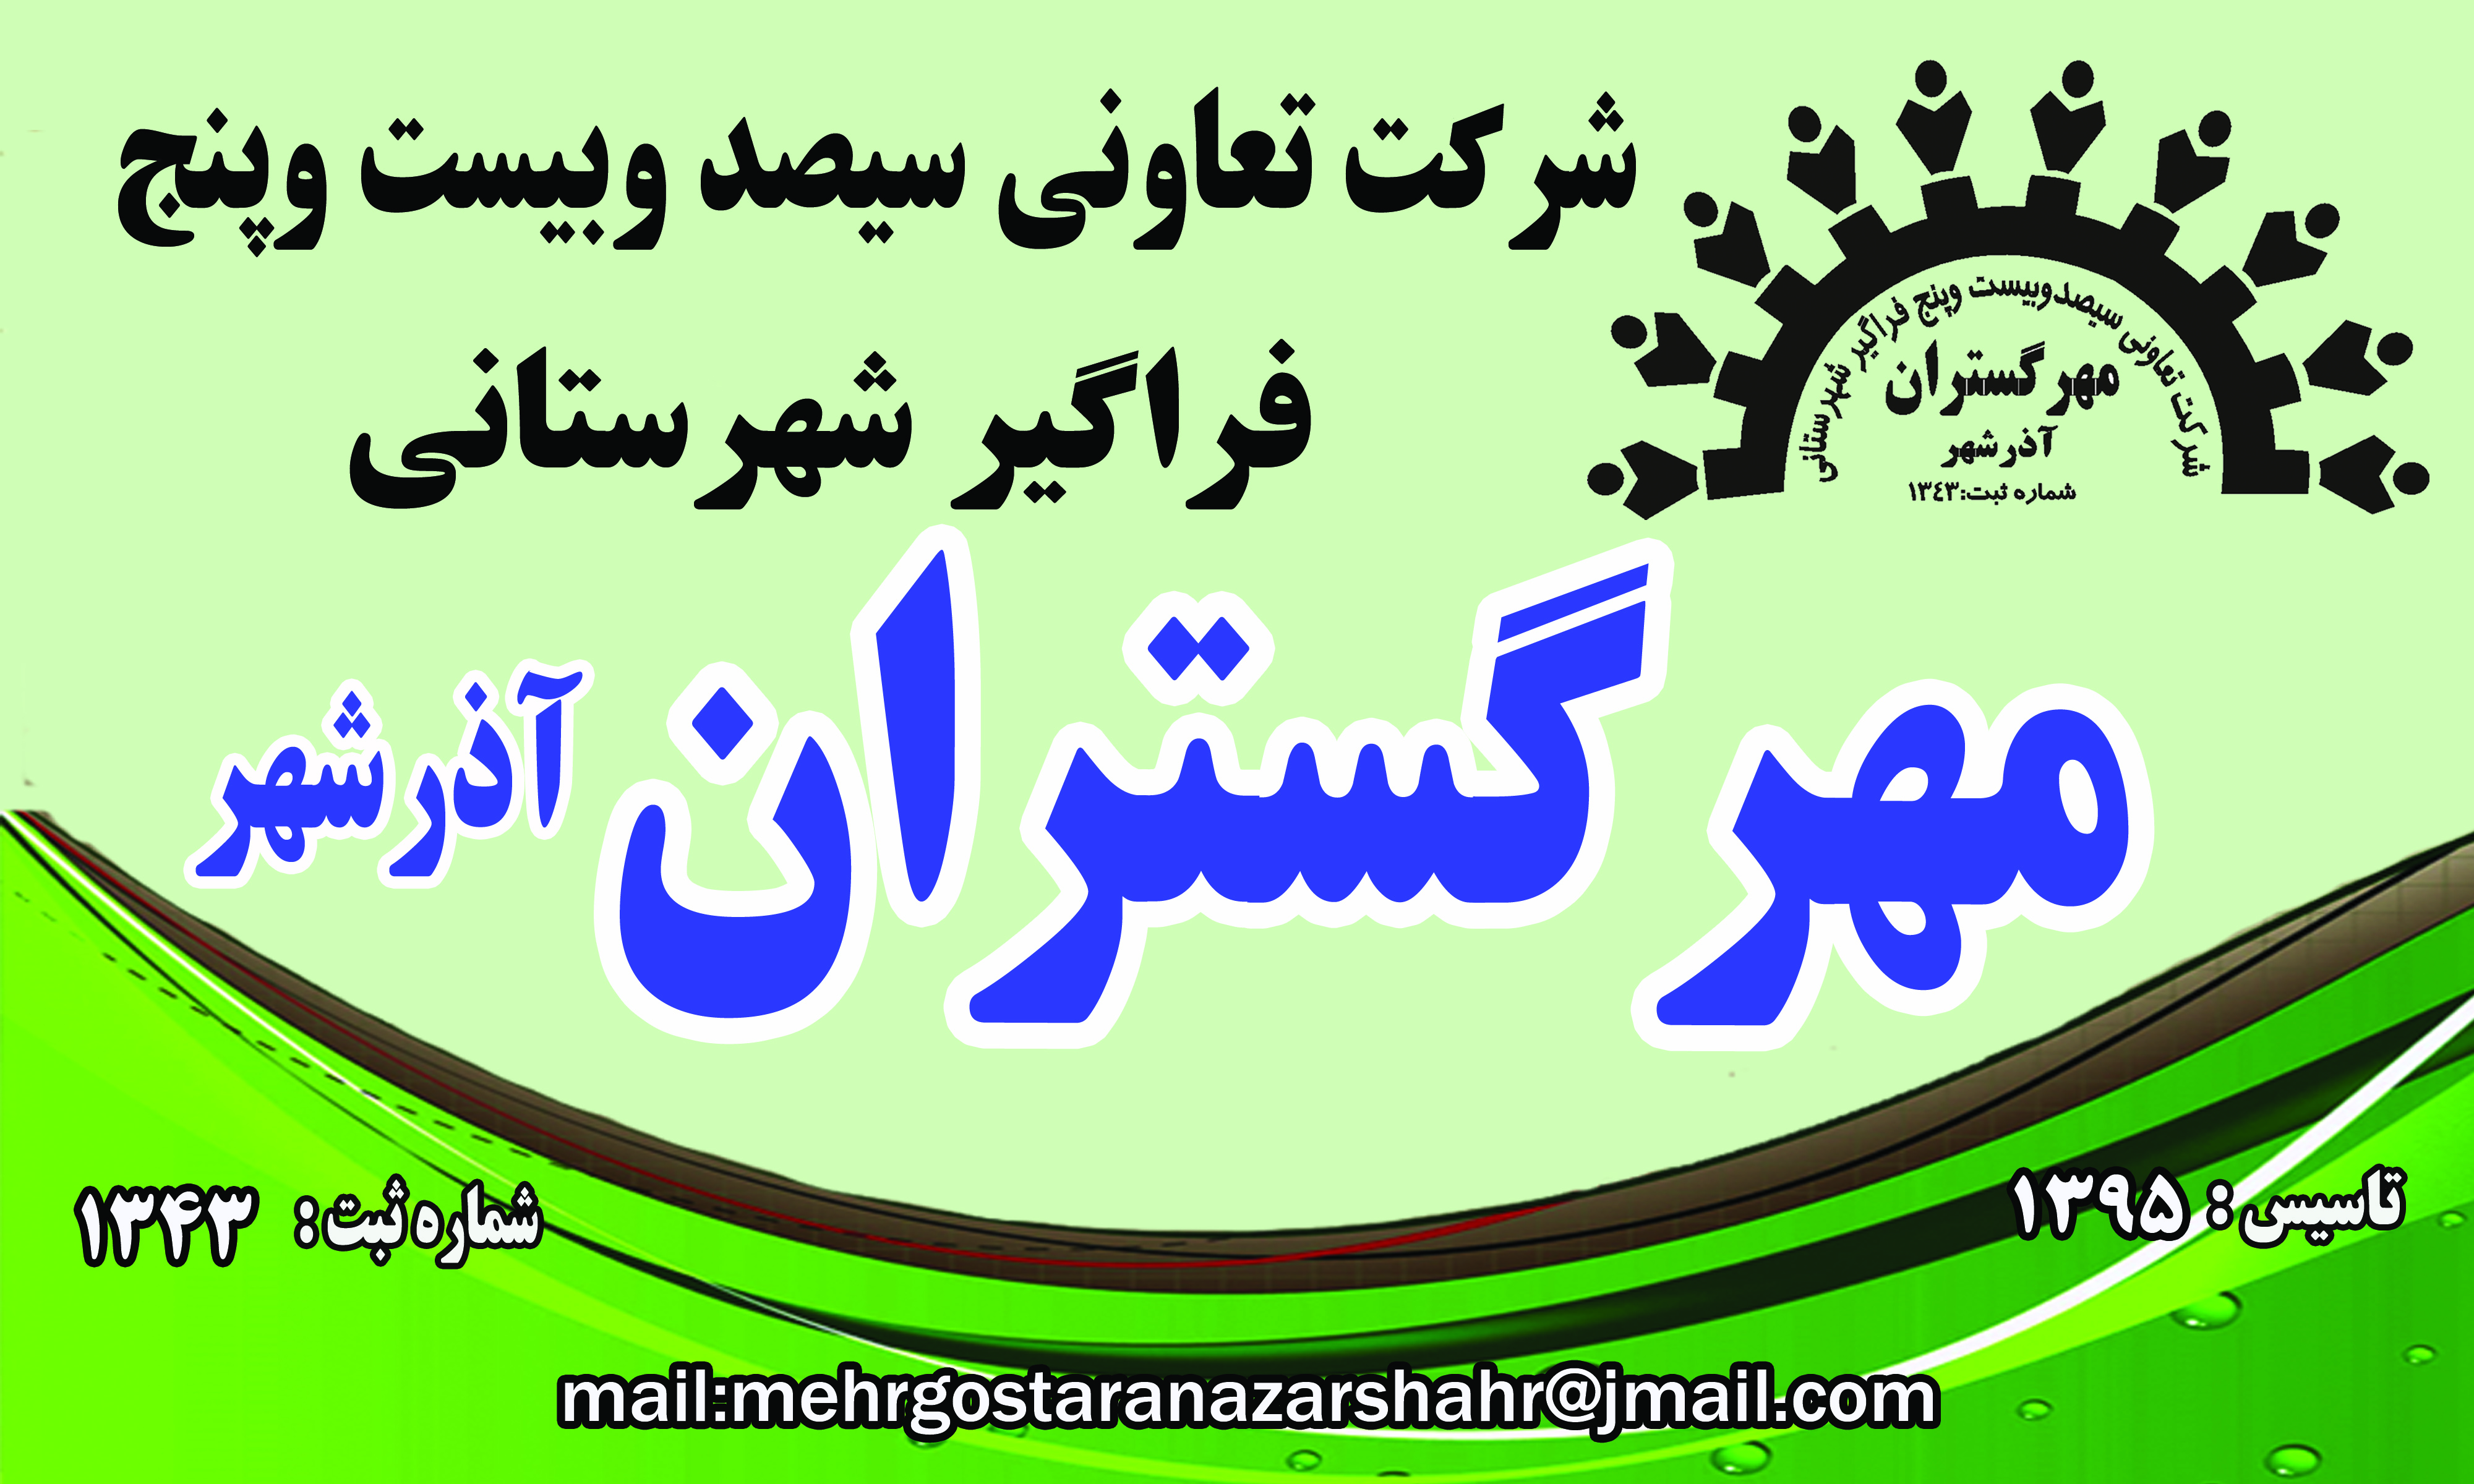 شرکت تعاونی 325 فراگیر شهرستانی مهرگستران آذرشهر- شماره ثبت 1343